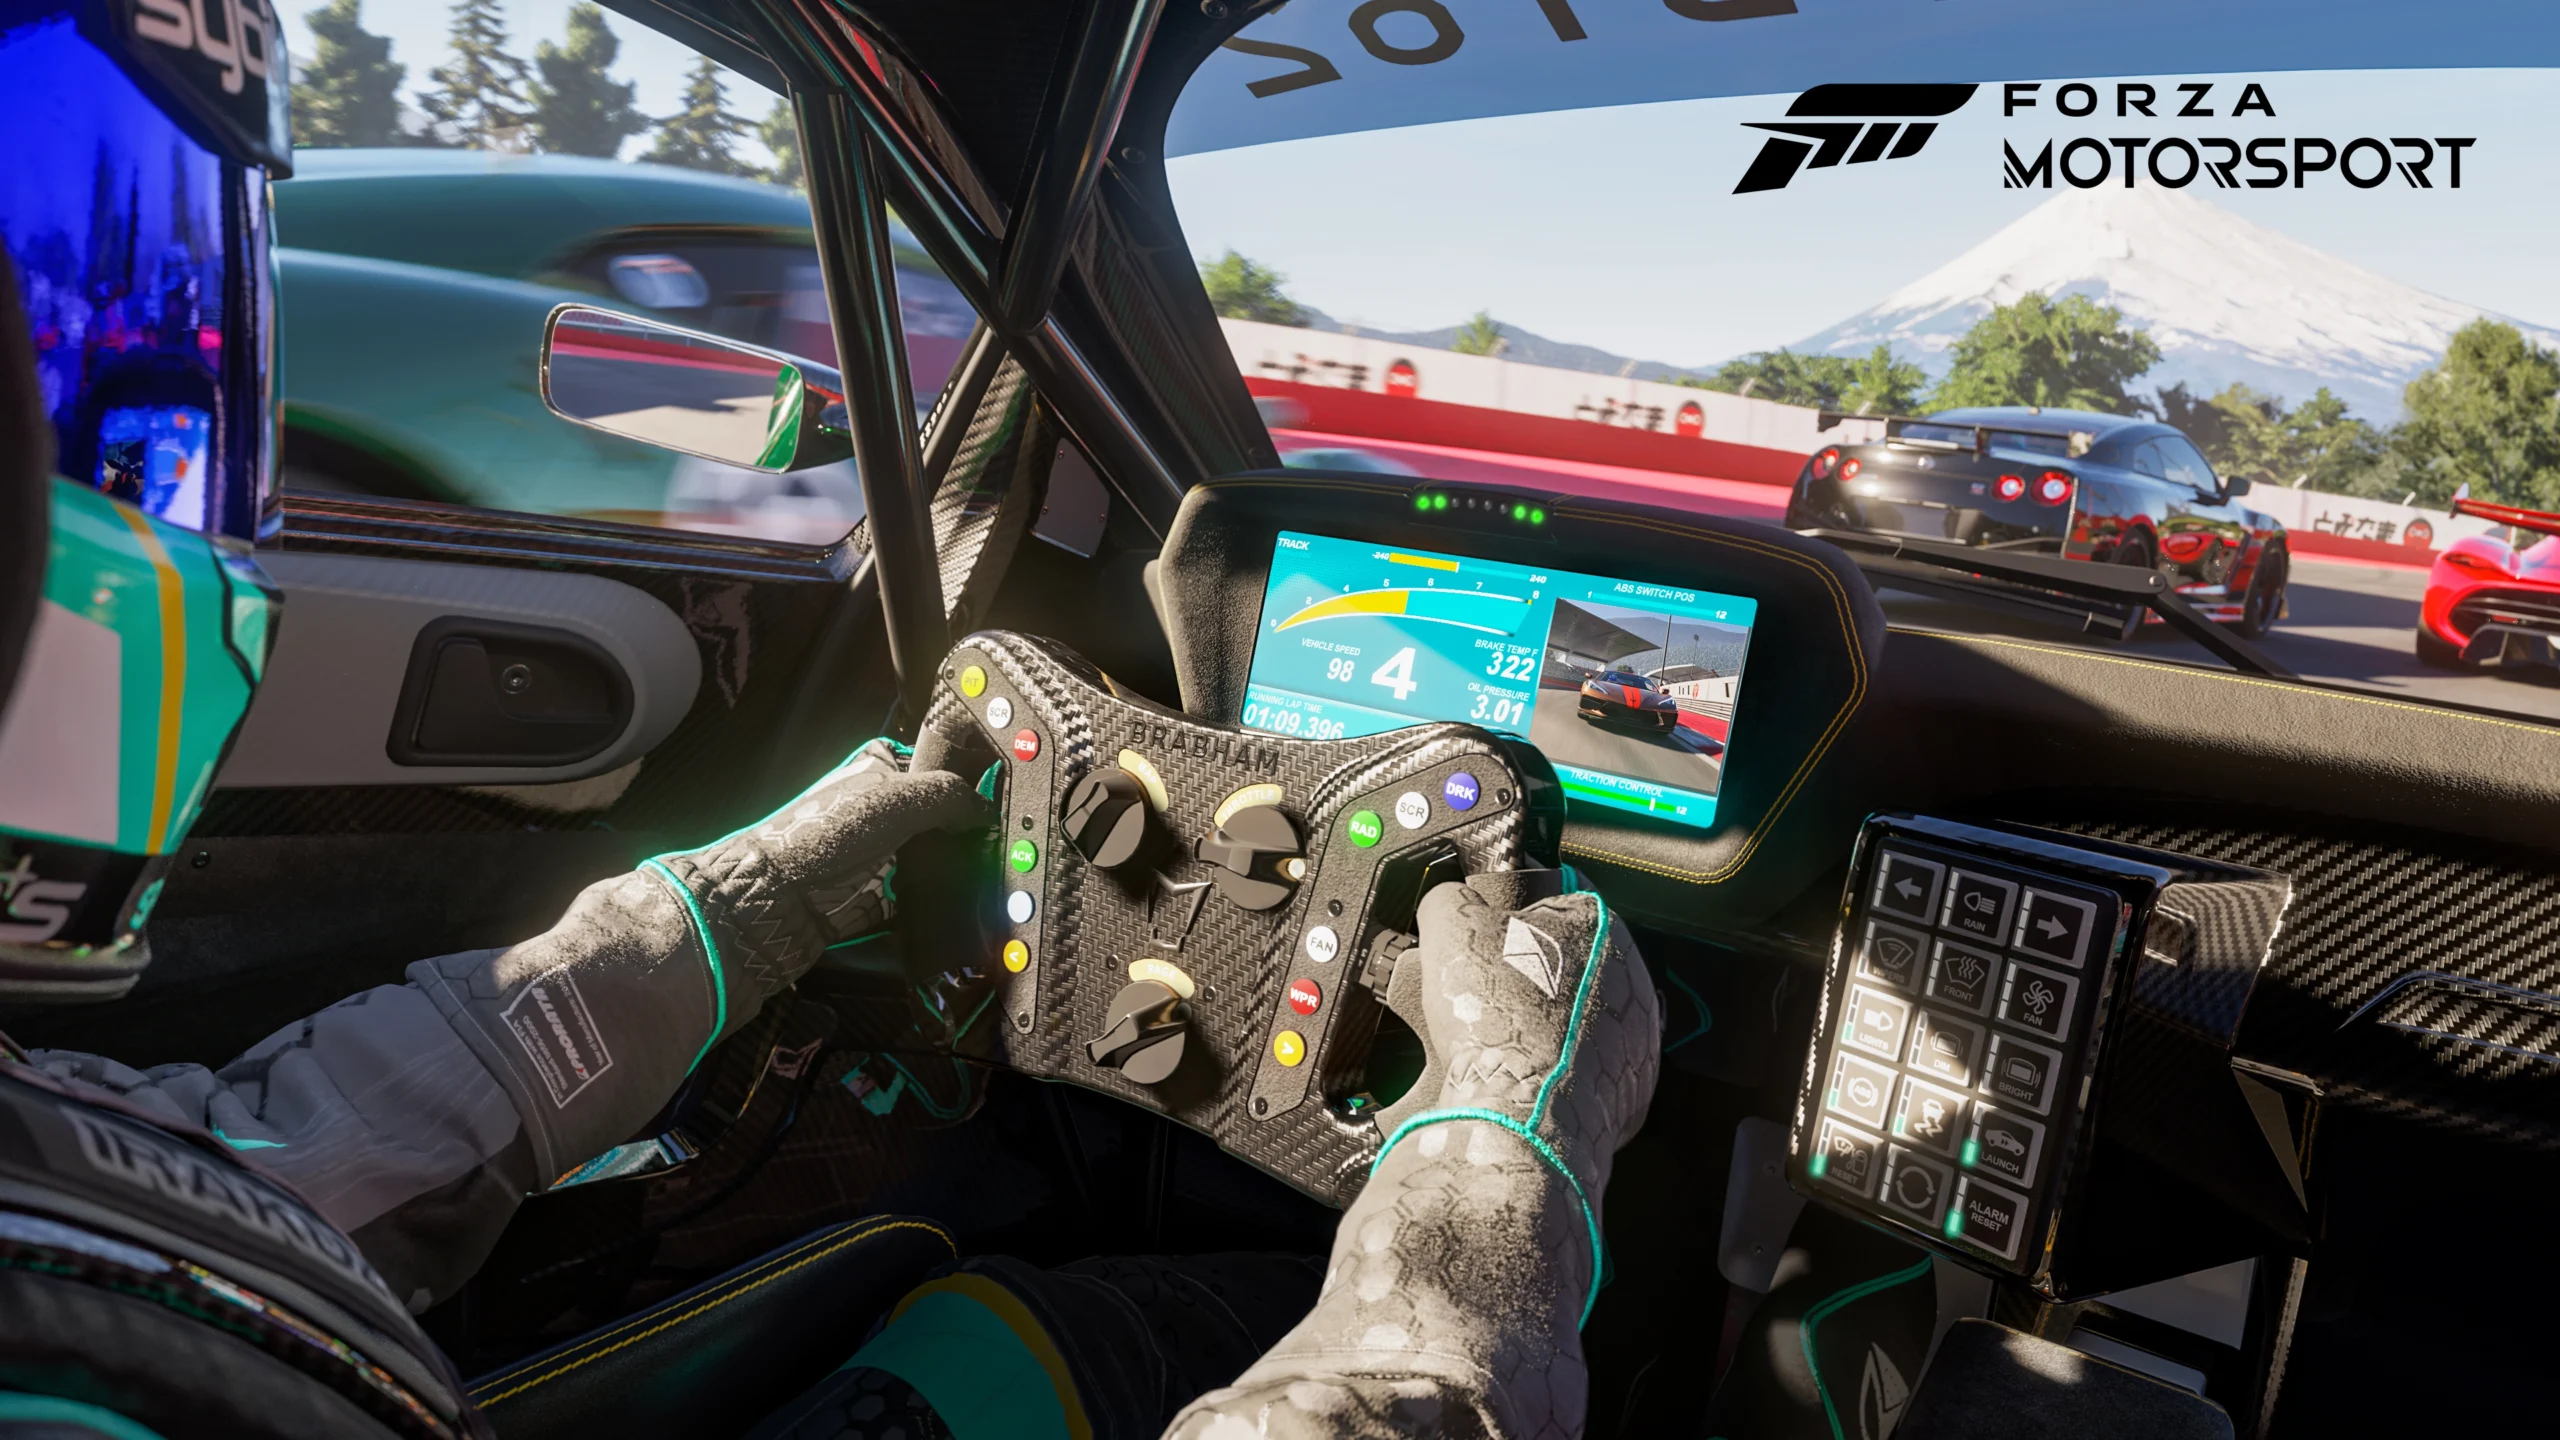 Forza Motorsport XboxGamesShowcase2022 PressKit 10 16x9 WM 76568d3fa79d335b8293 scaled 1